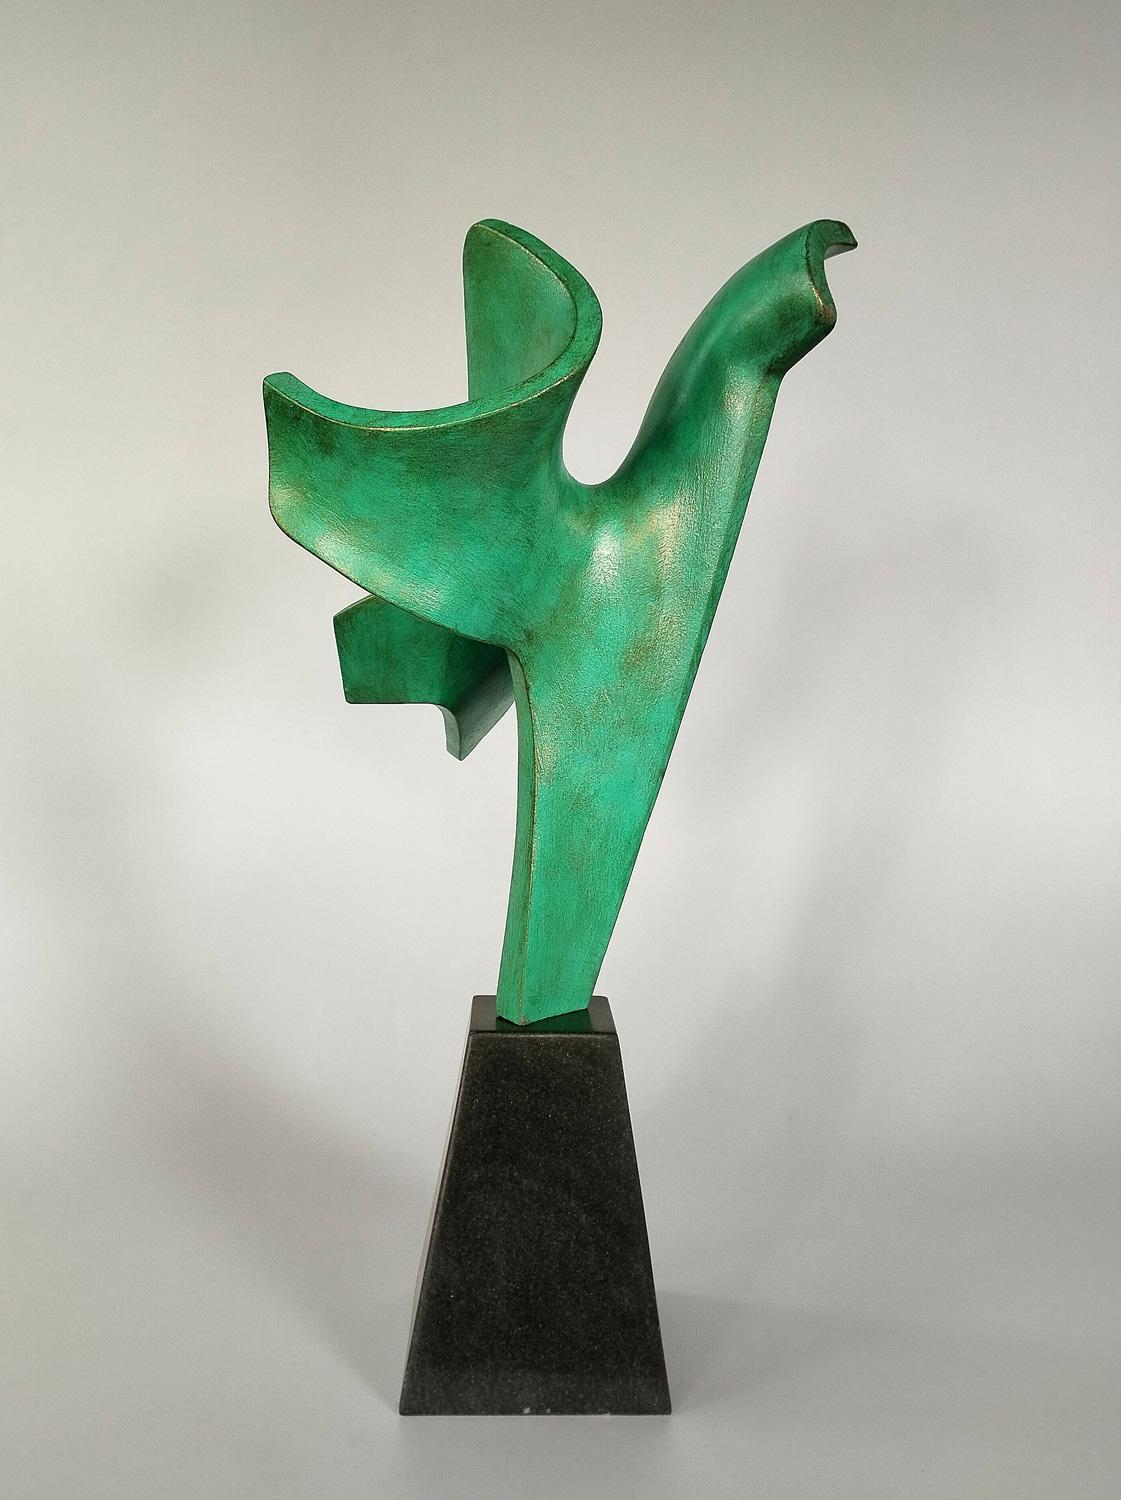 Sculpture en bronze coulé à patine verte classique sur socle en marbre noir. Edition de 3 à cette taille. D'autres tailles et finitions de patine sont également disponibles sur commande, veuillez vous renseigner pour plus de détails.

La série